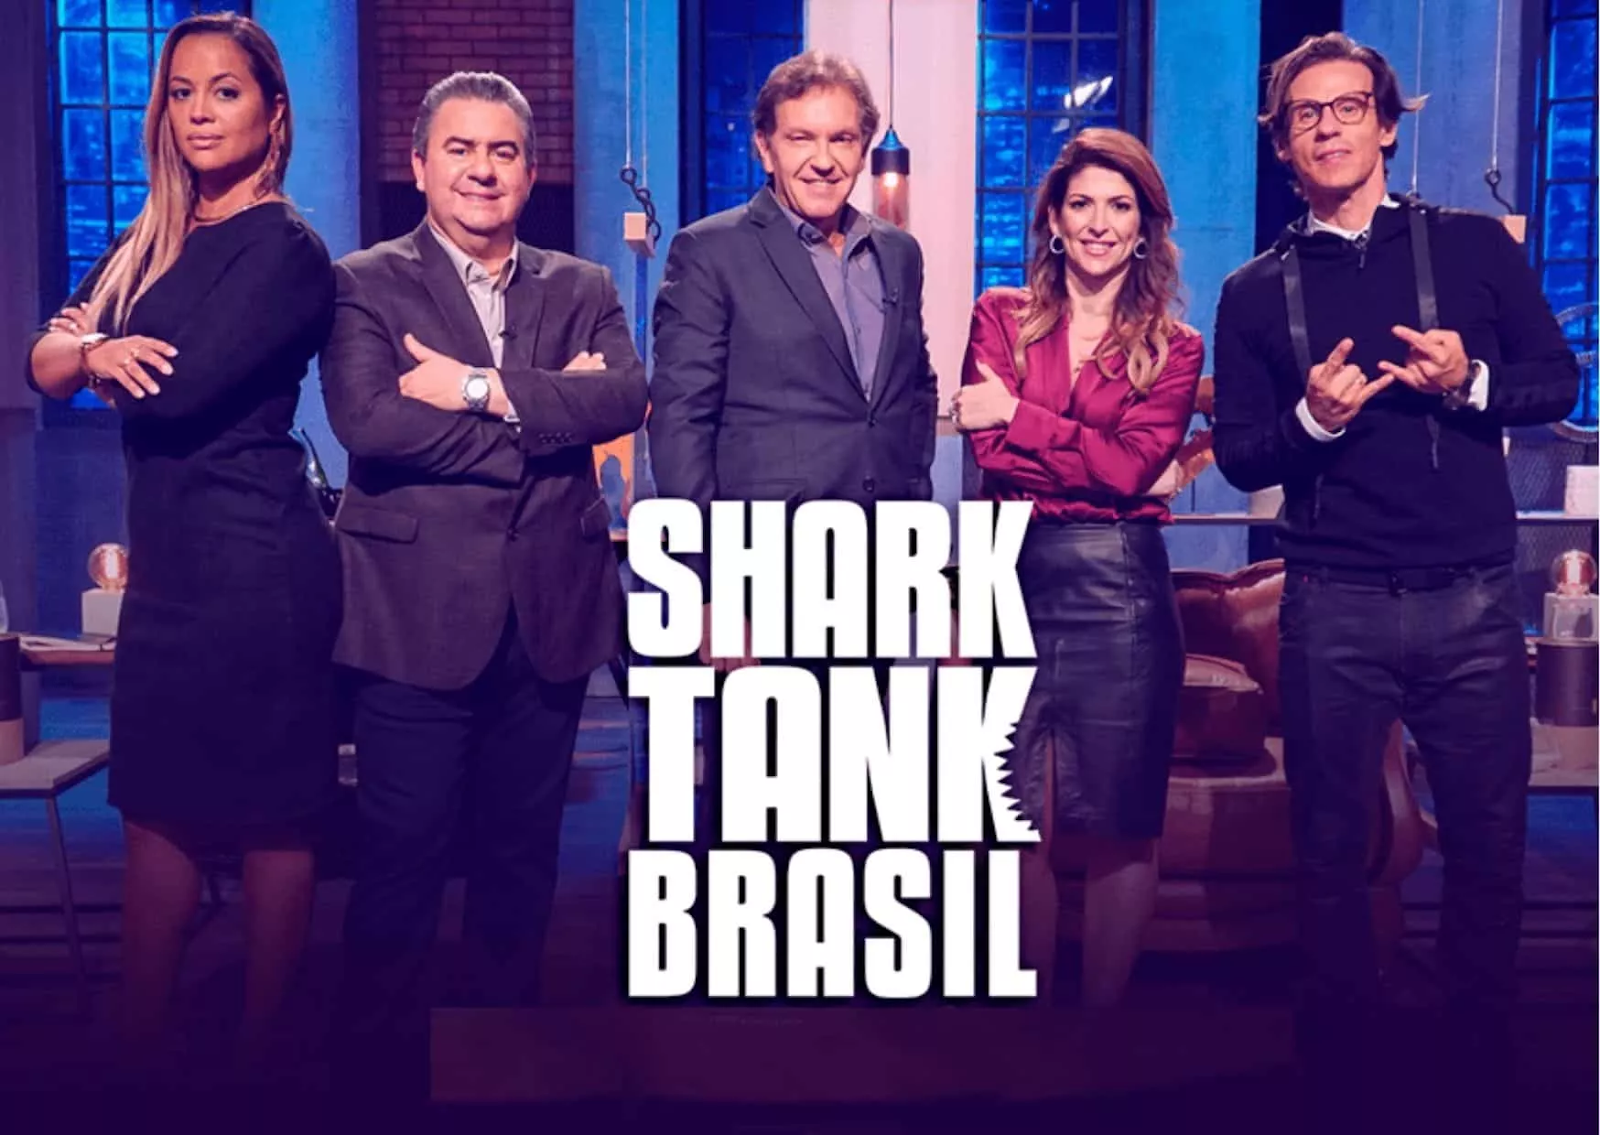 Shark Tank Brasil 